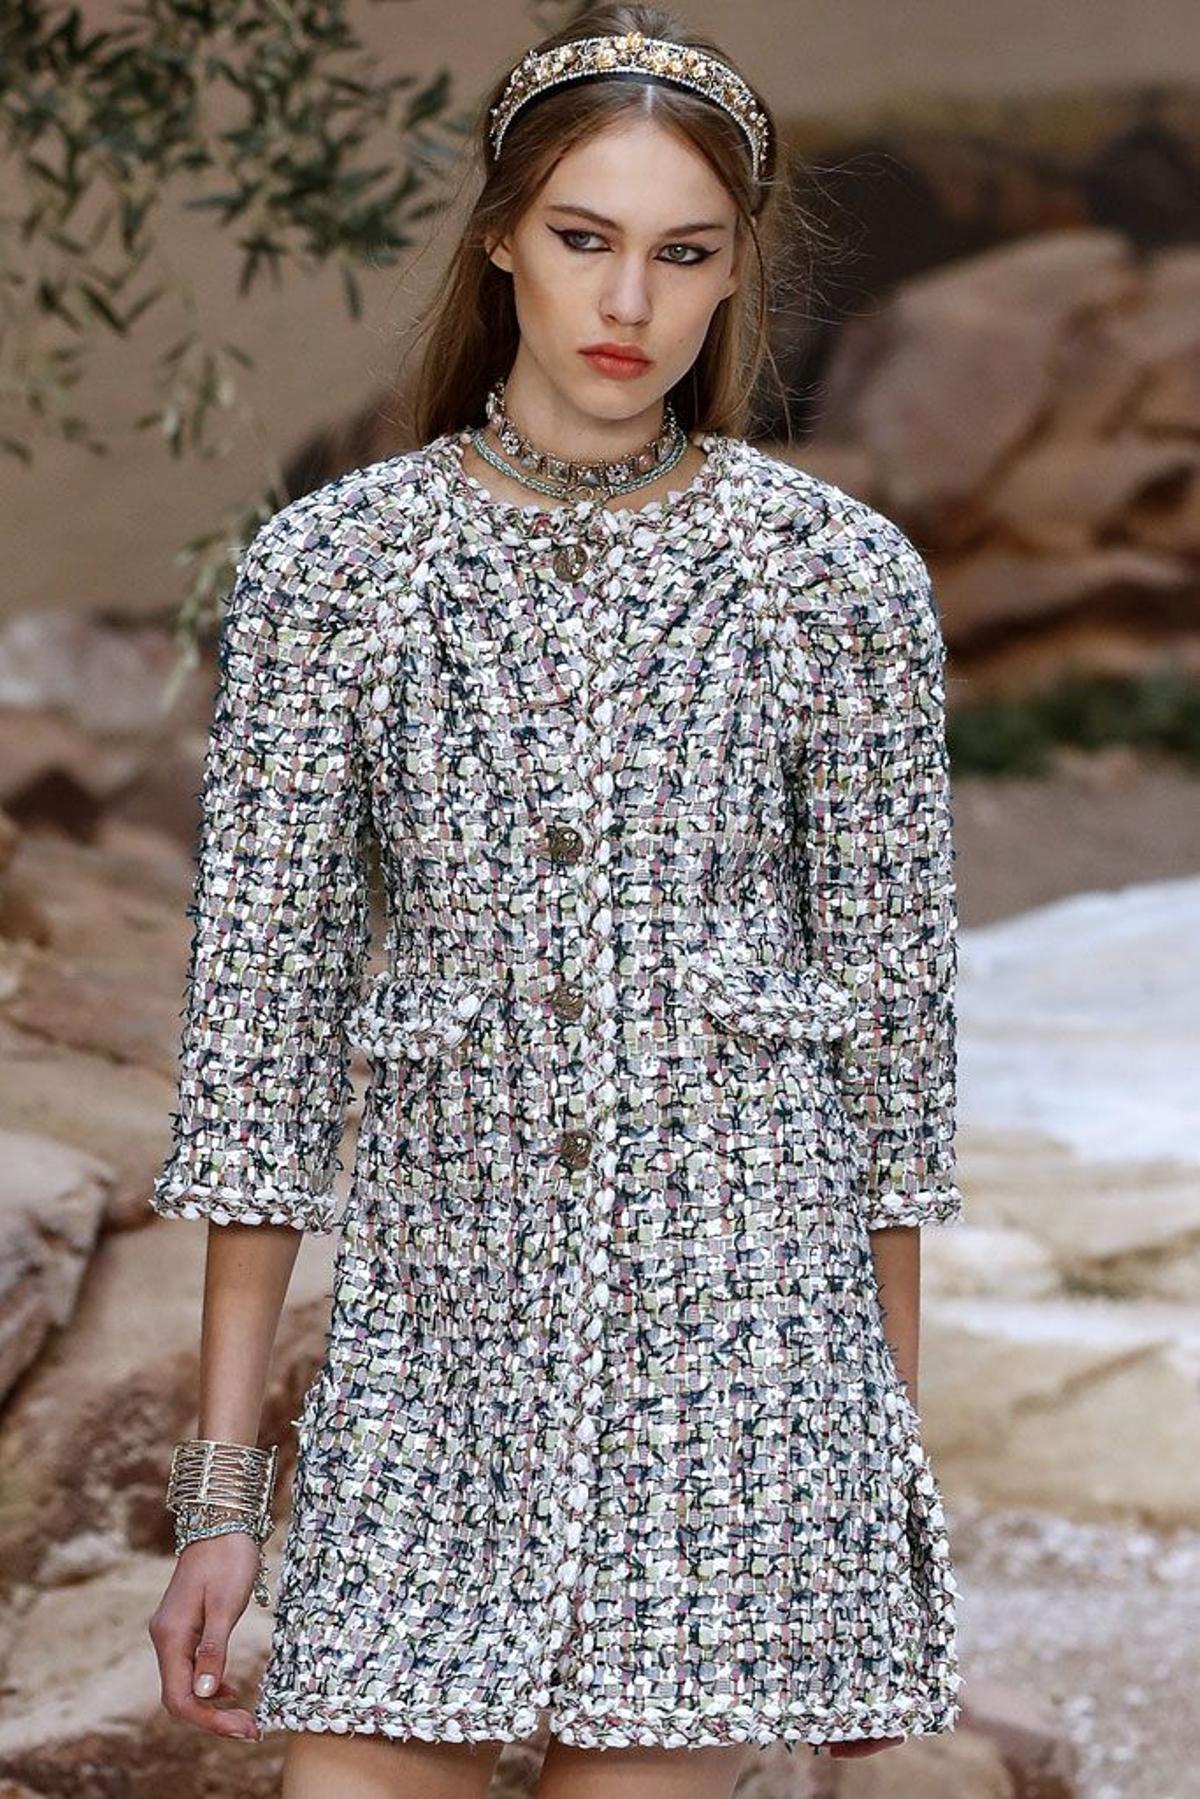 Chanel Colección Crucero 2018: abrigo de tweed